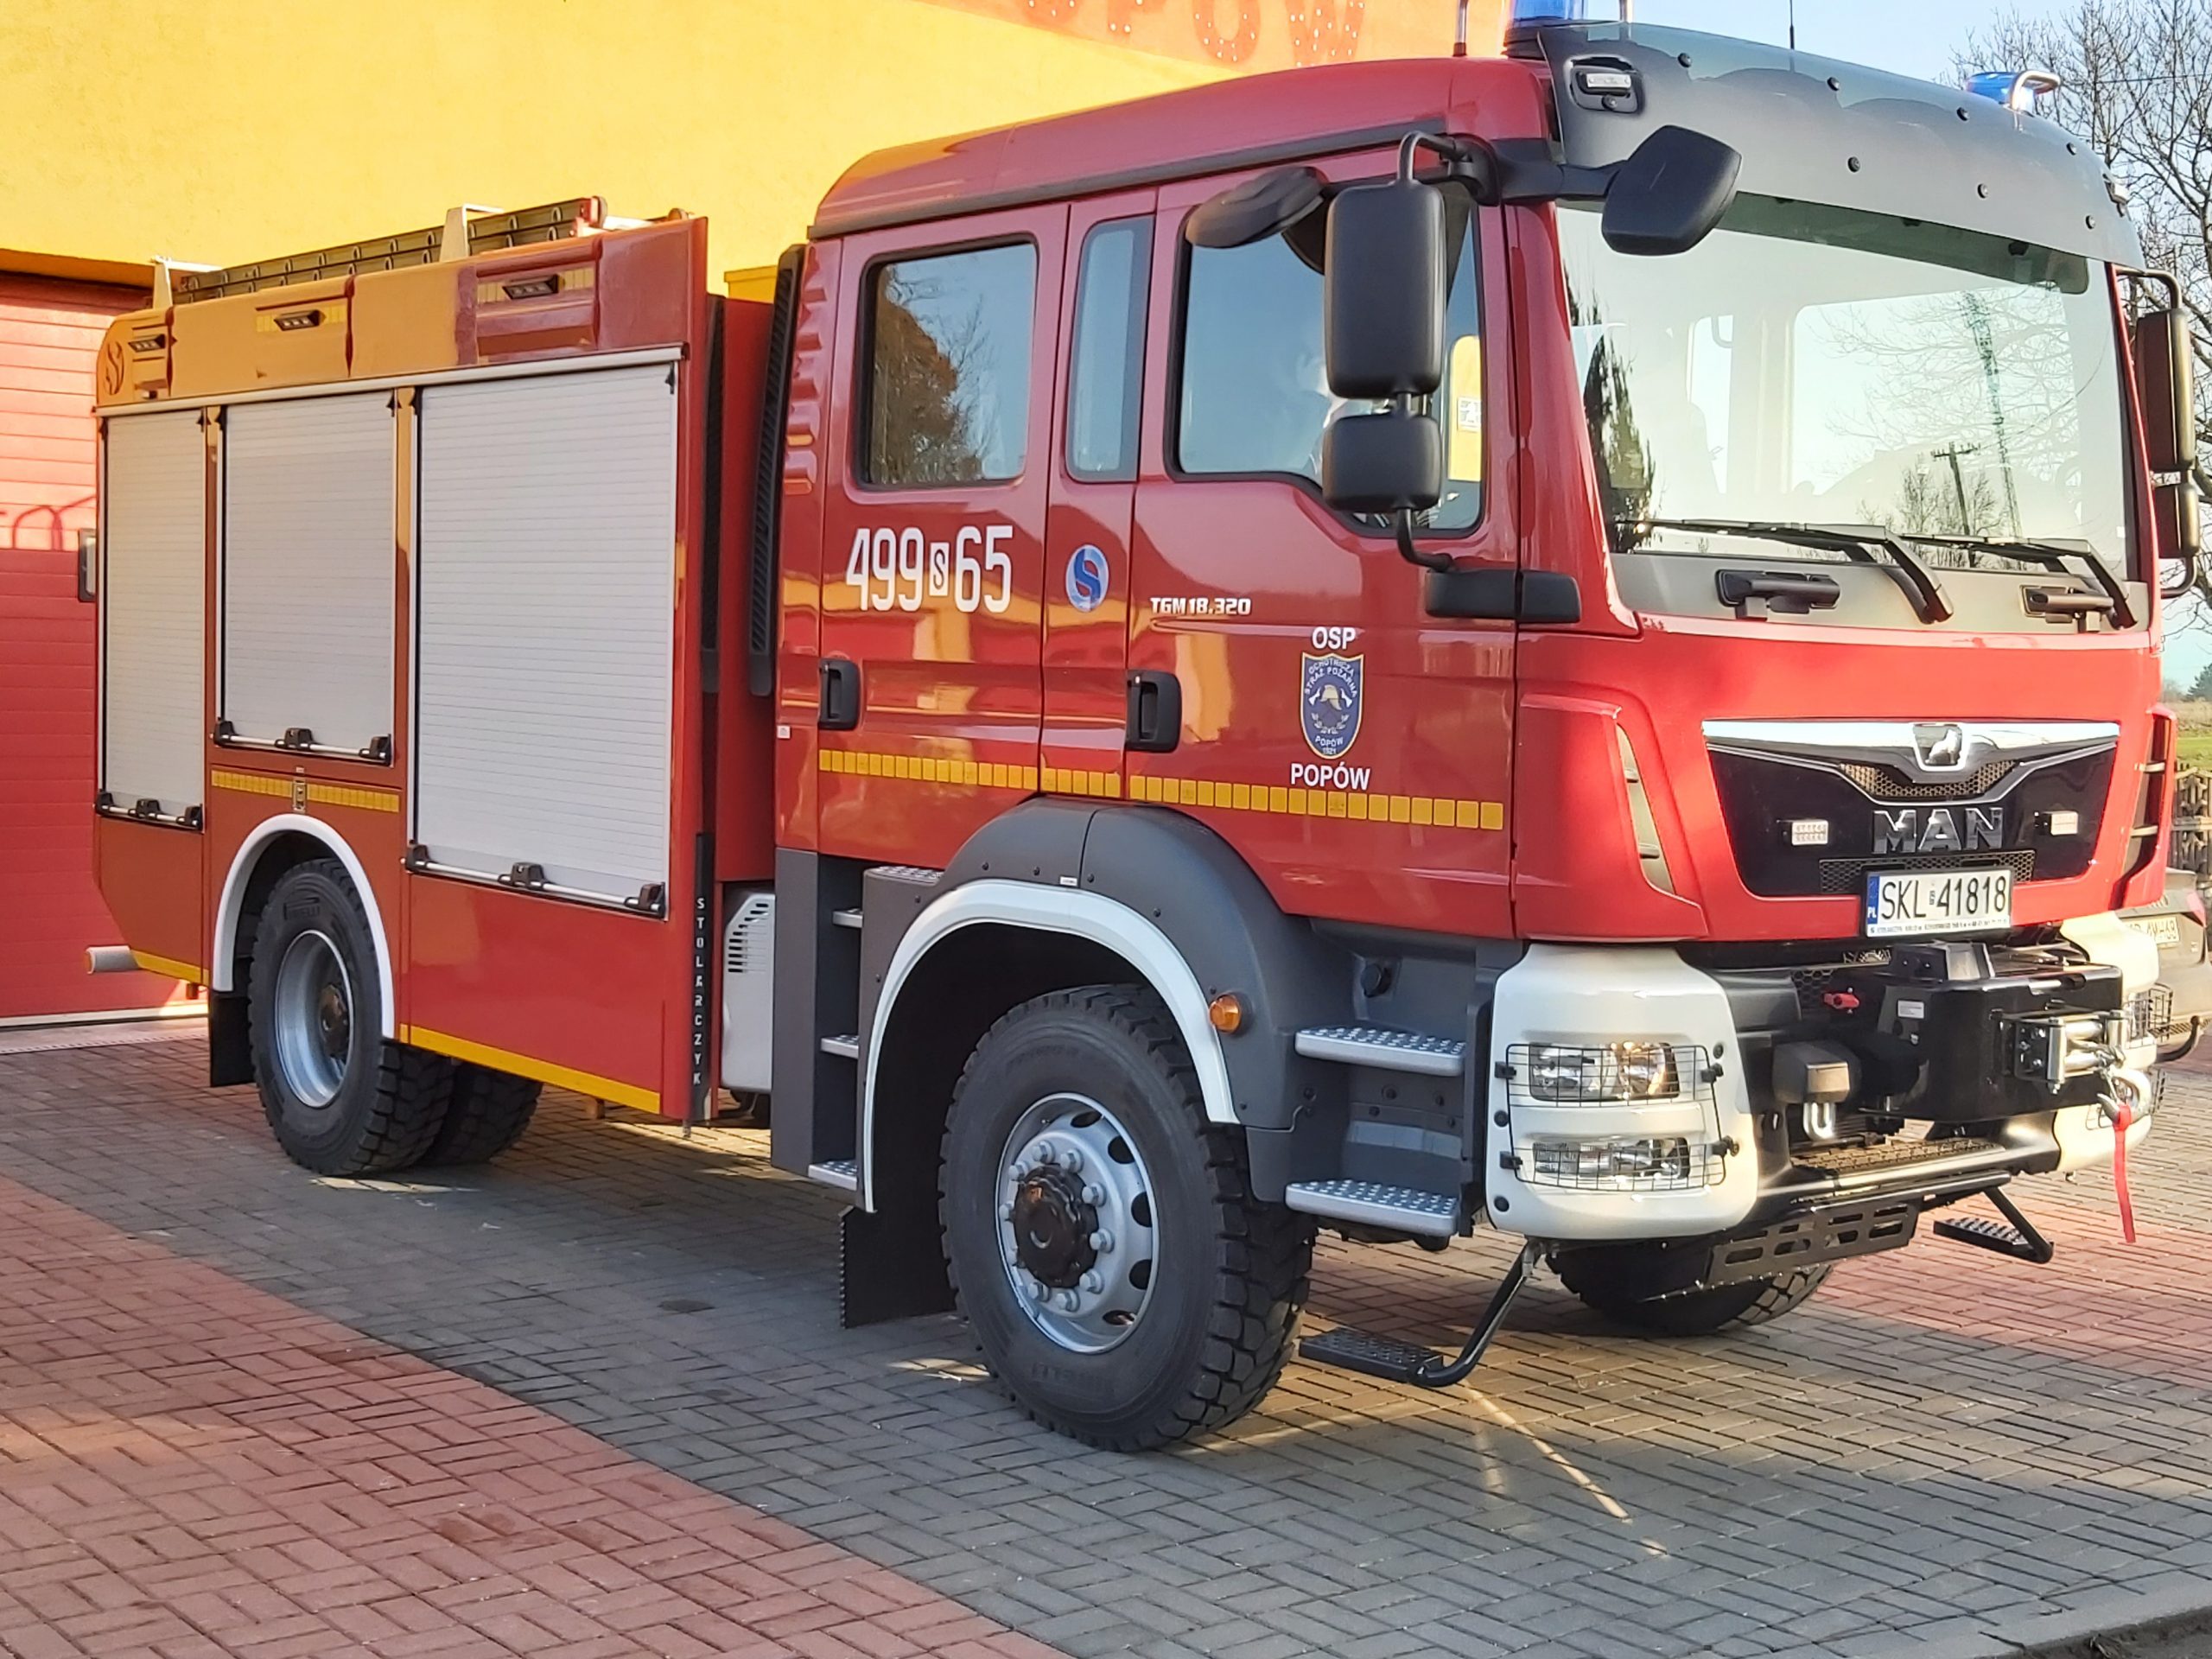 Obrazek przedstawiający wóz strażacki